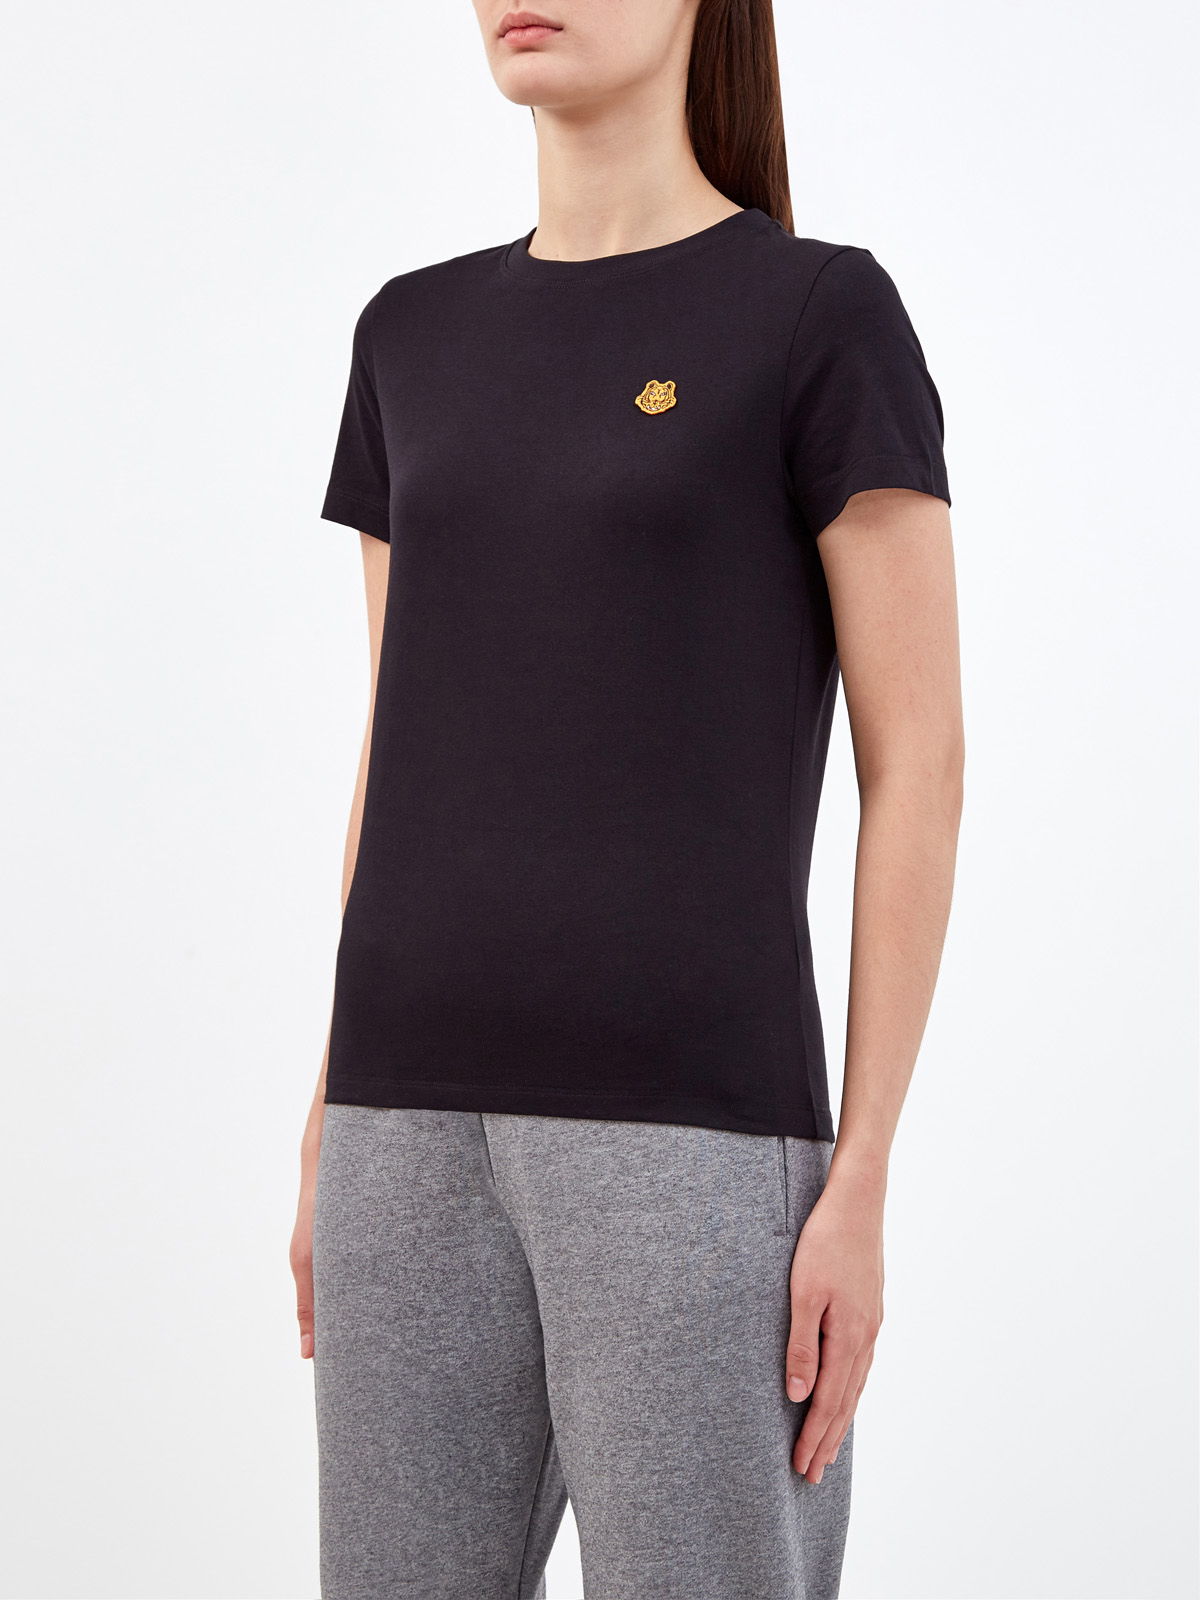 Хлопковая футболка из гладкого джерси с вышитой эмблемой бренда KENZO, цвет черный, размер S;L;XS - фото 3